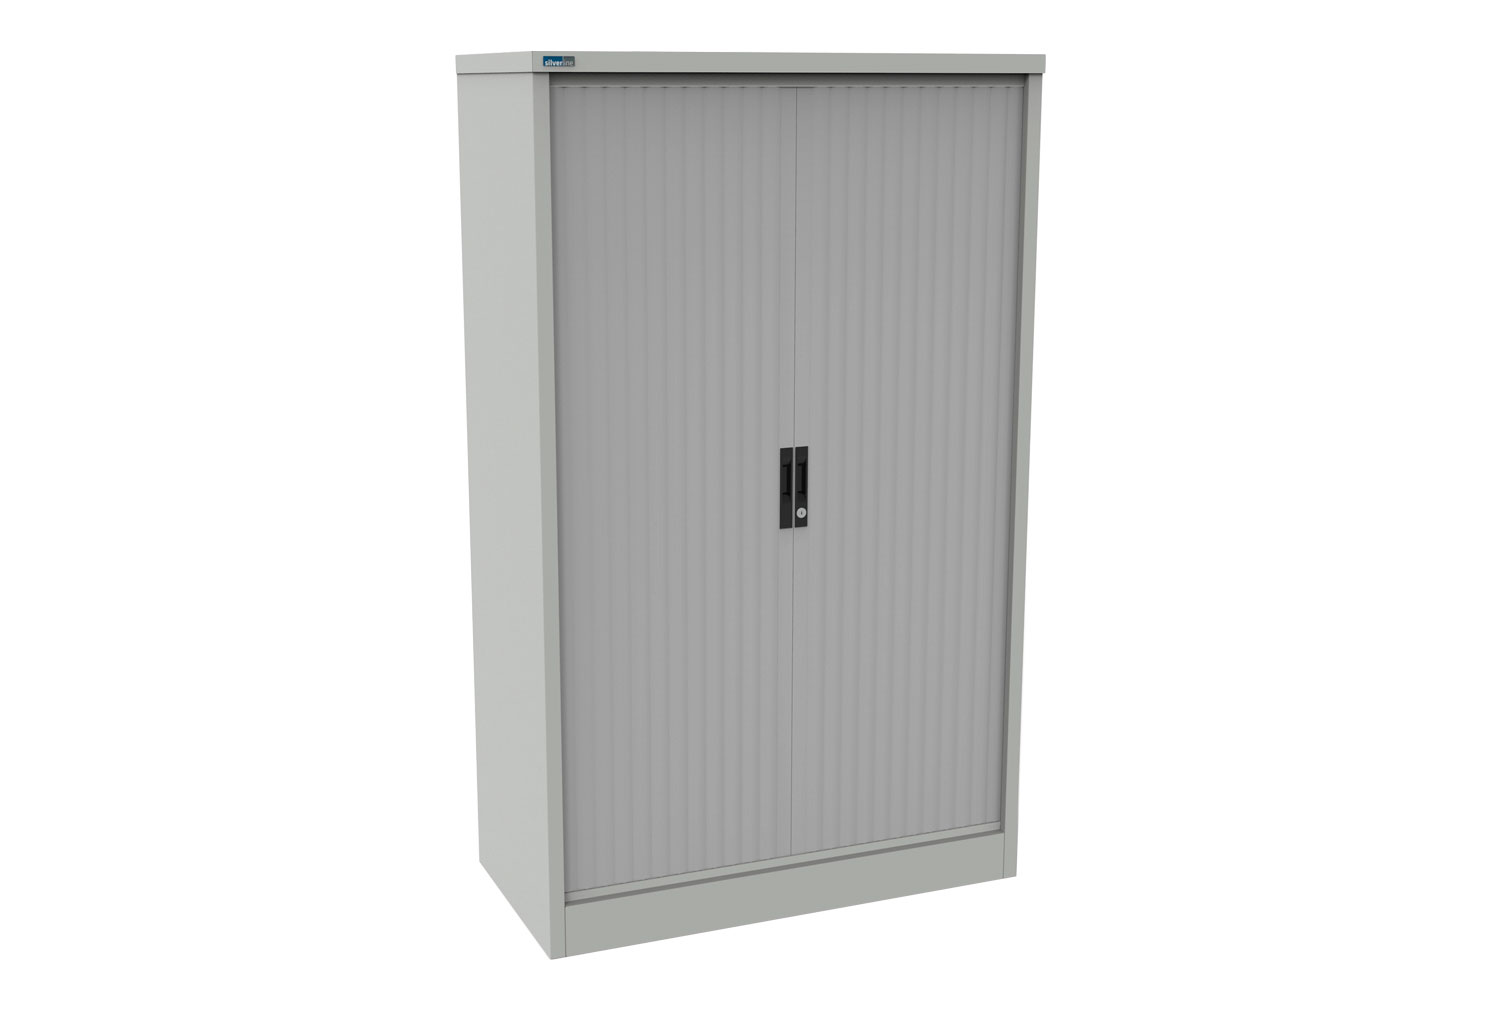 Silverline Kontrax Side Tambour Door Office Cupboards 100cm Wide, 100wx51dx132h (cm), Light Grey Body, Light Grey